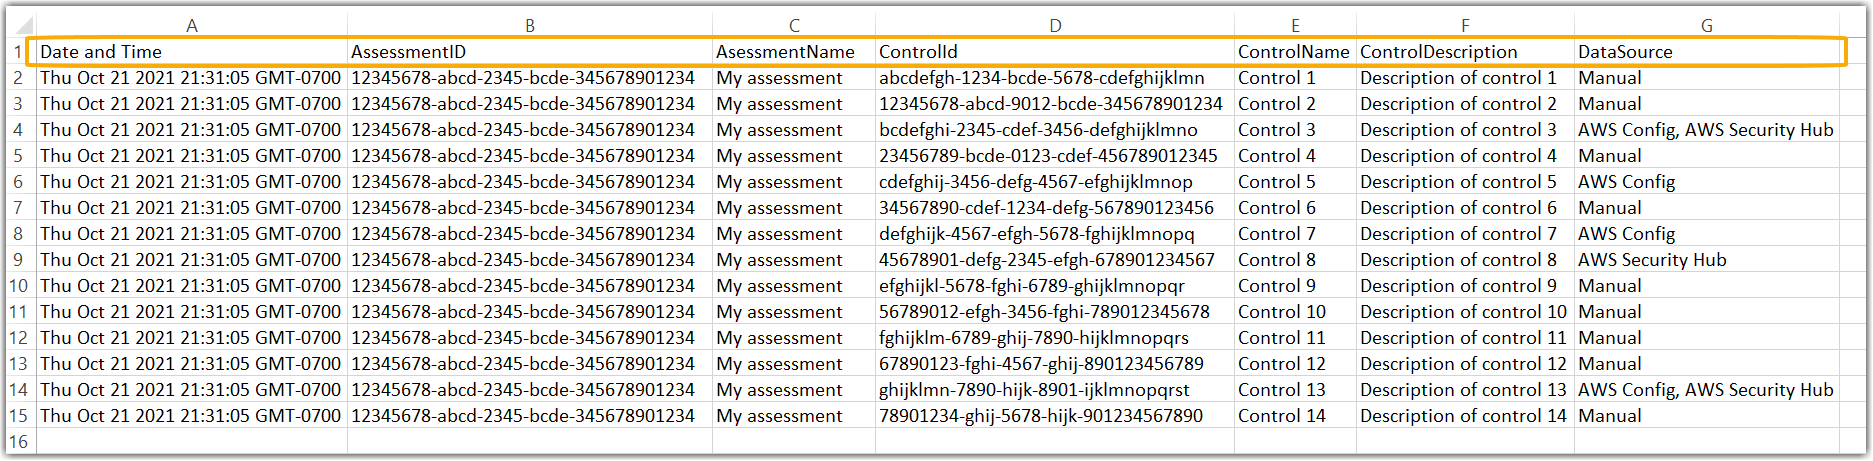 Capture d’écran d’un exemple de fichier .csv présentant une liste de contrôles contenant des éléments probants non conformes.